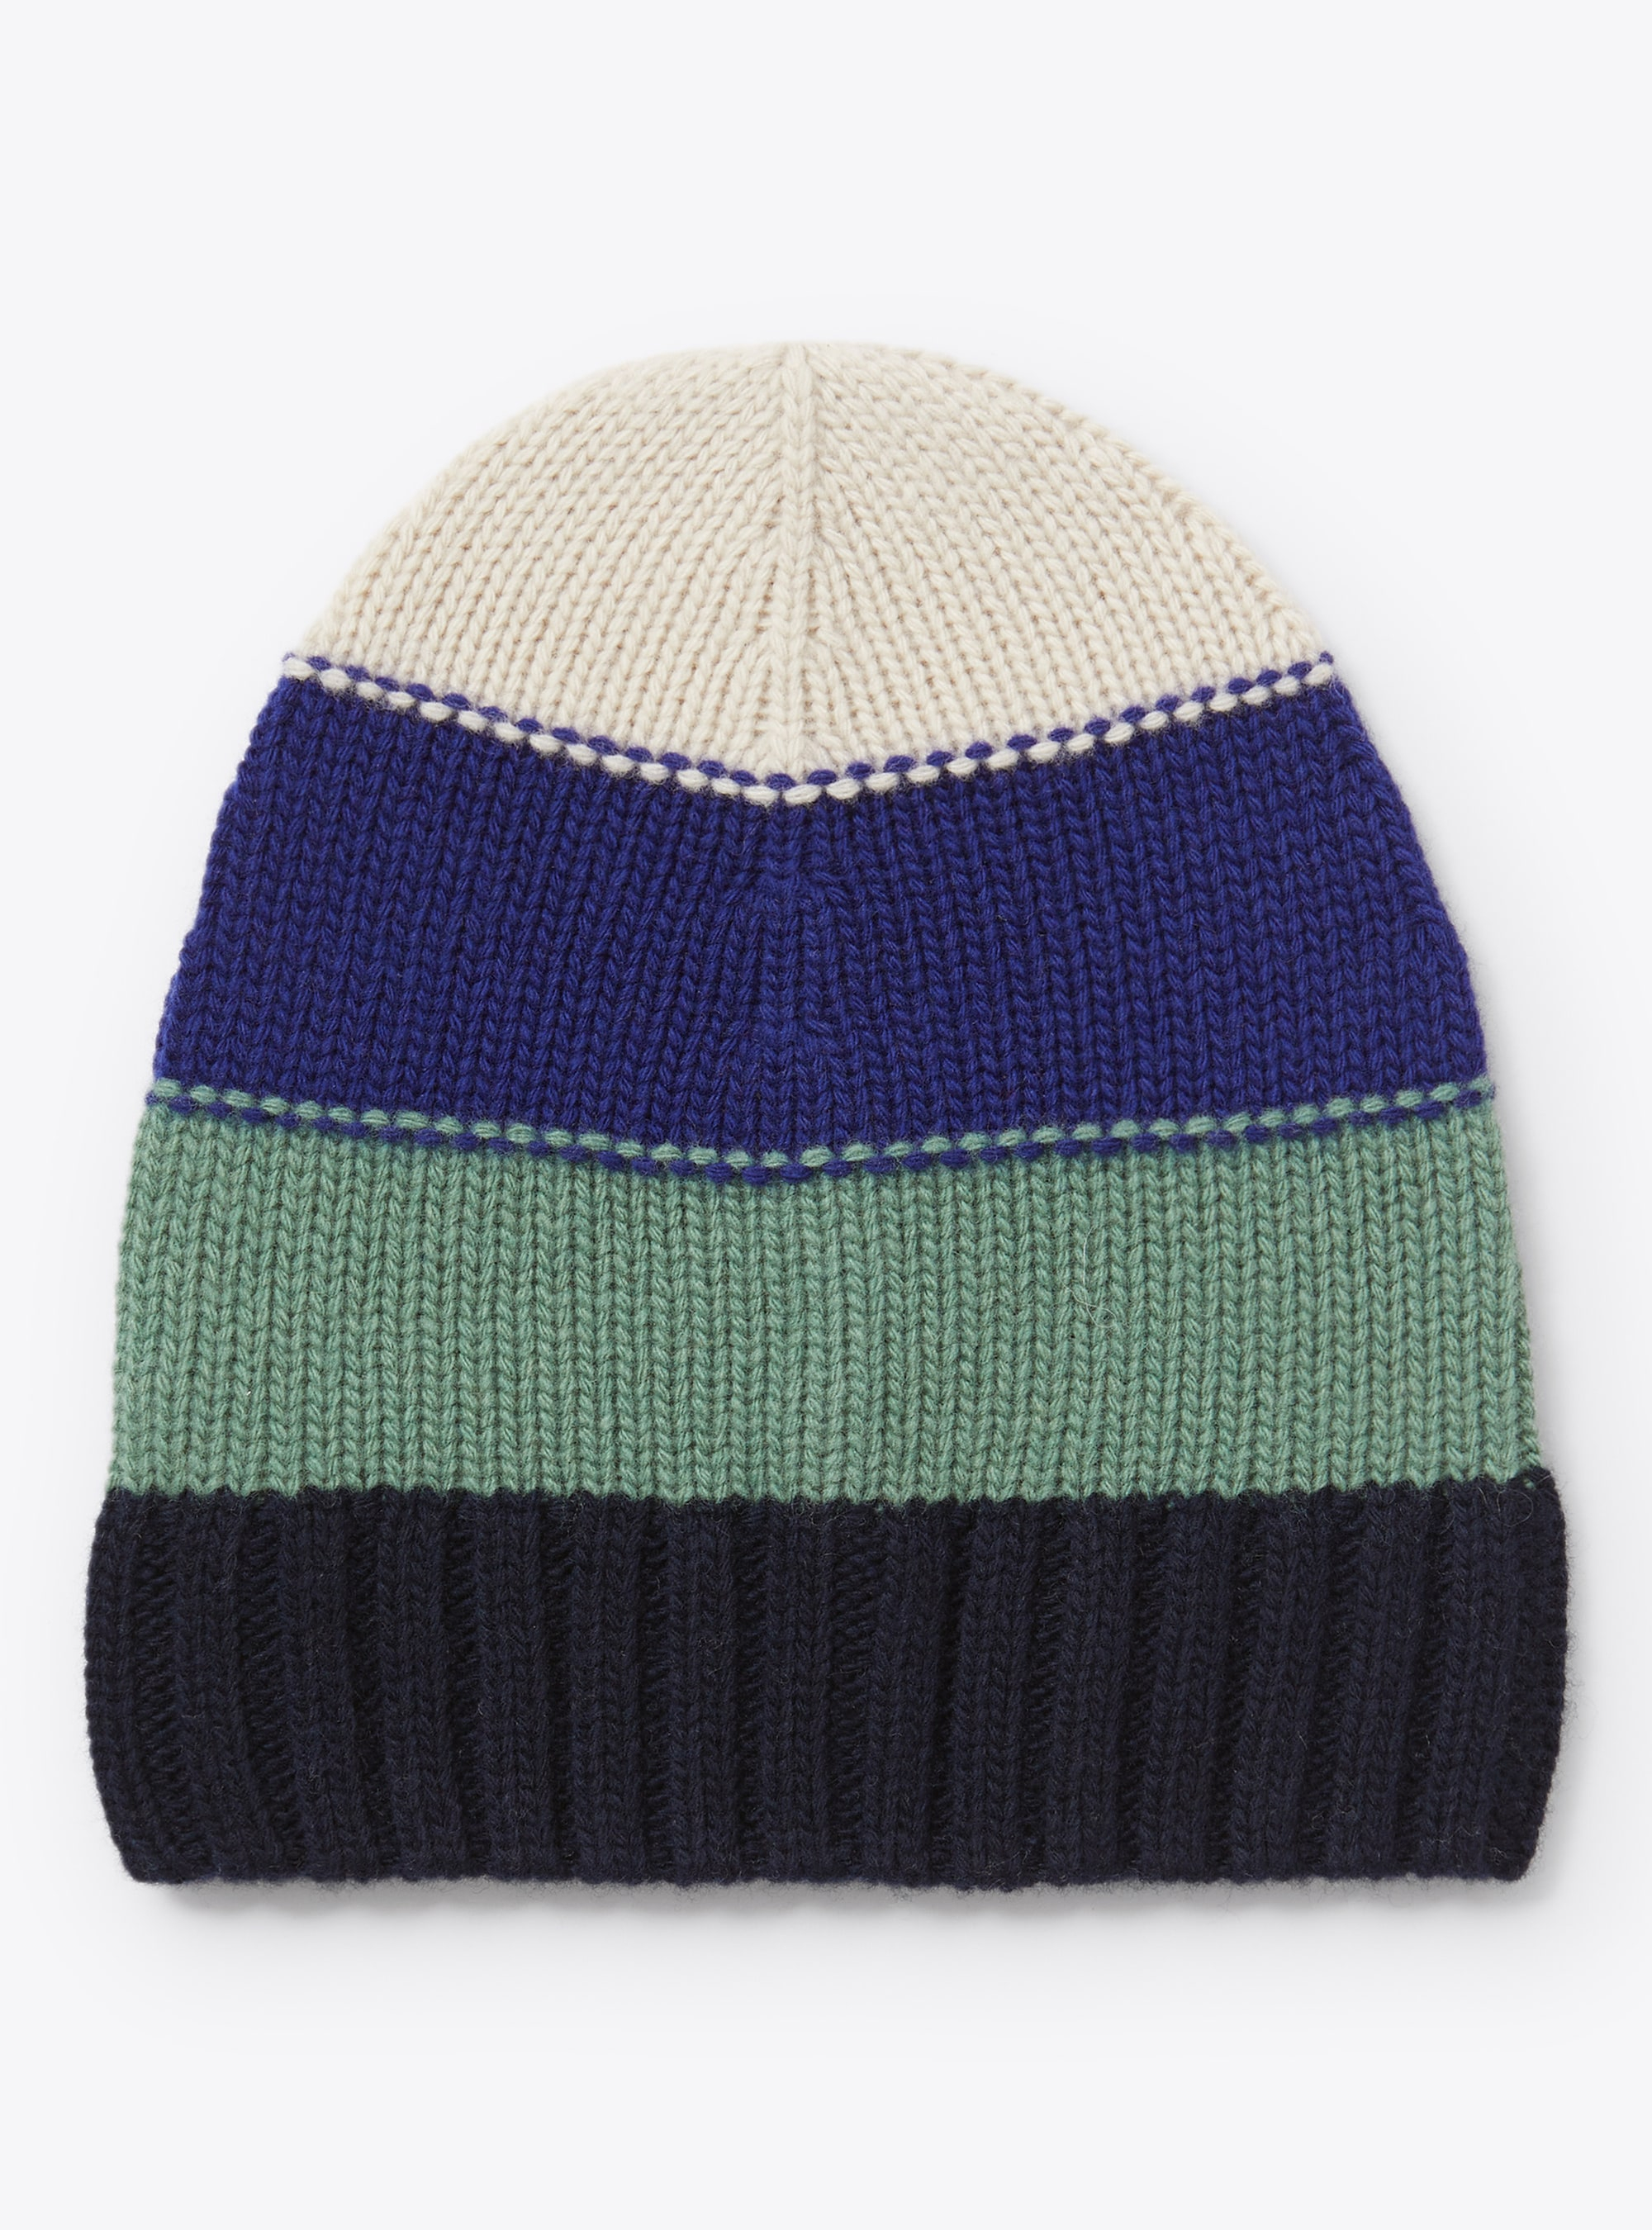 Multicolour stripe knitted hat - Accessories - Il Gufo